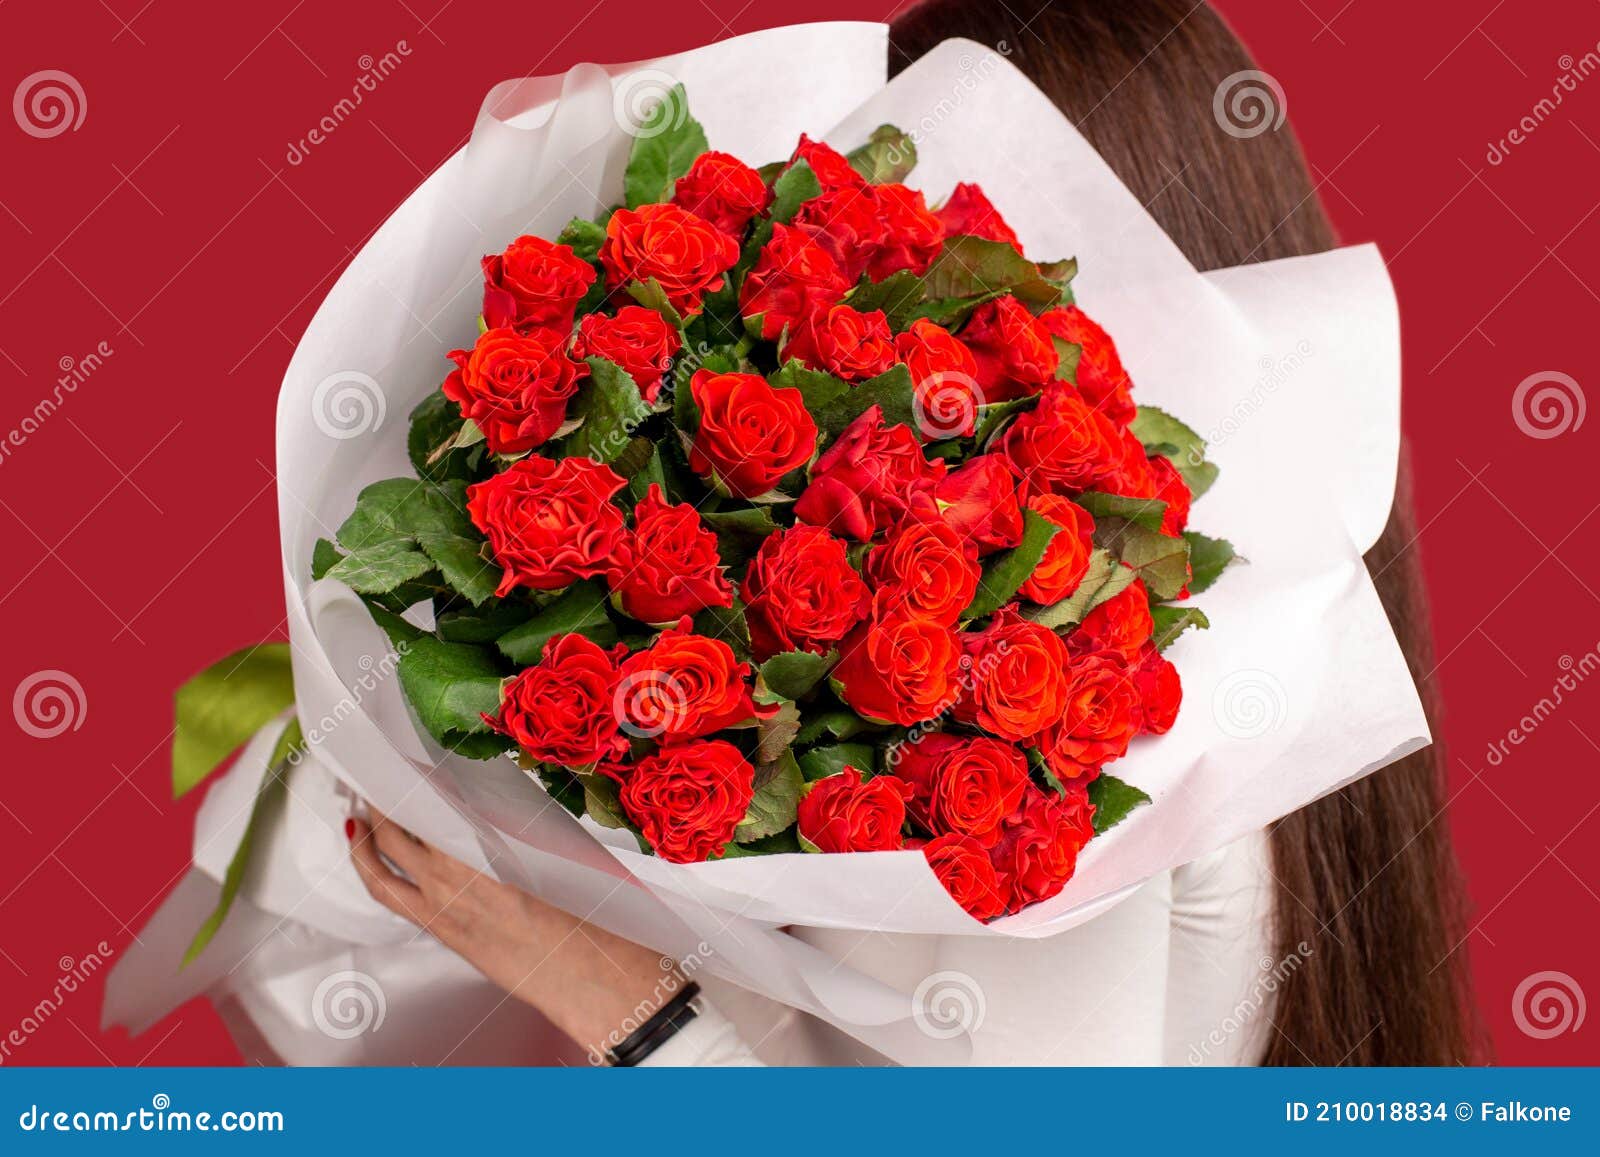 La Fille Au Gros Bouquet De Roses De Fleurs Sur Son épaule Photo stock -  Image du dame, femelle: 210018834